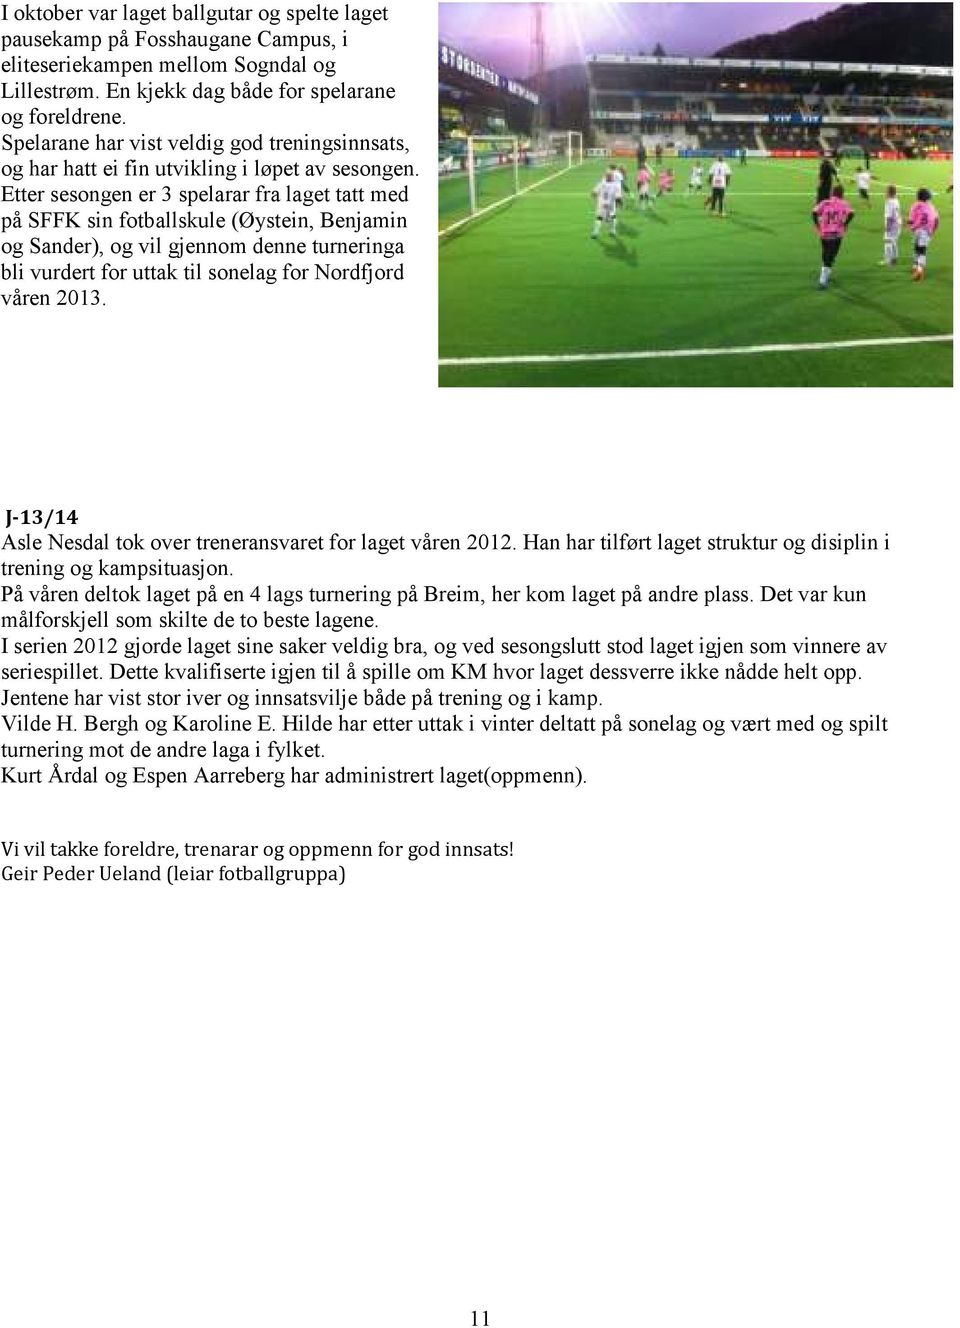 Etter sesongen er 3 spelarar fra laget tatt med på SFFK sin fotballskule (Øystein, Benjamin og Sander), og vil gjennom denne turneringa bli vurdert for uttak til sonelag for Nordfjord våren 2013.